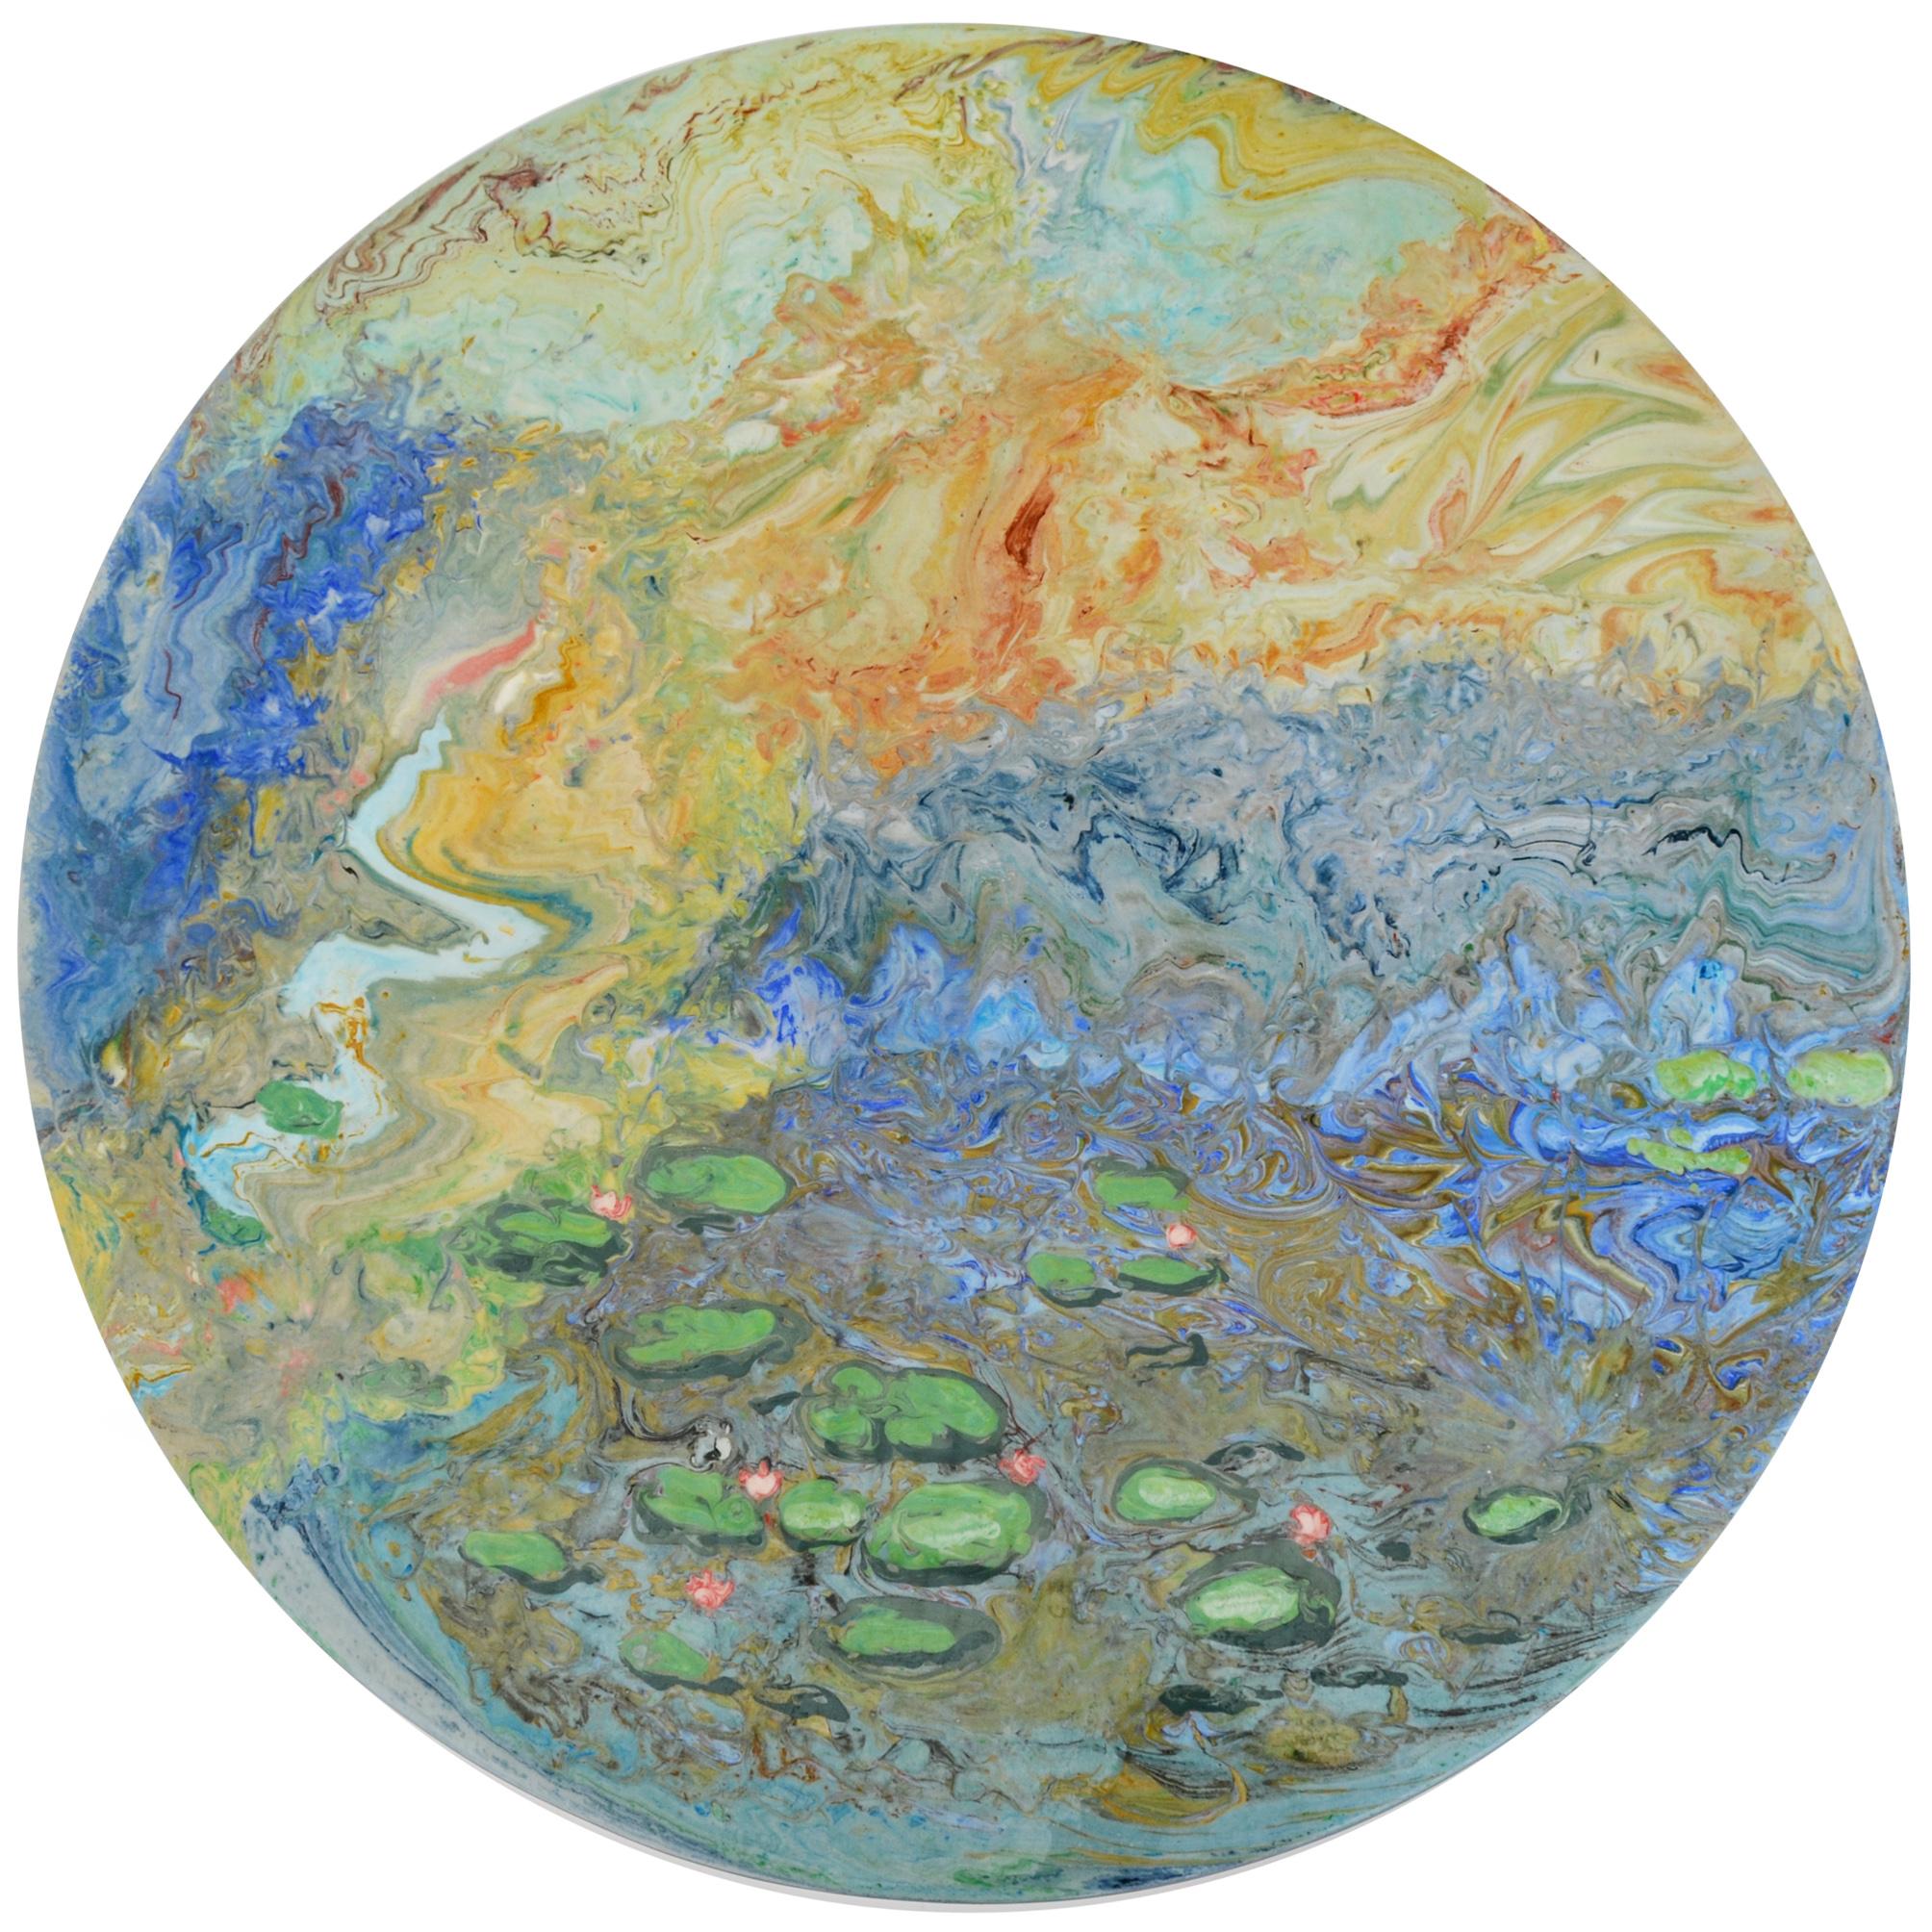 Dieser kleine Tisch mit Marmorplatte ist vollständig mit pigmentierter, kalter Keramik dekoriert, deren Dekoration eine Hommage an den französischen Künstler Monet ist und seine berühmten Seerosen in einer eher abstrakten Vision wieder aufnimmt. Der